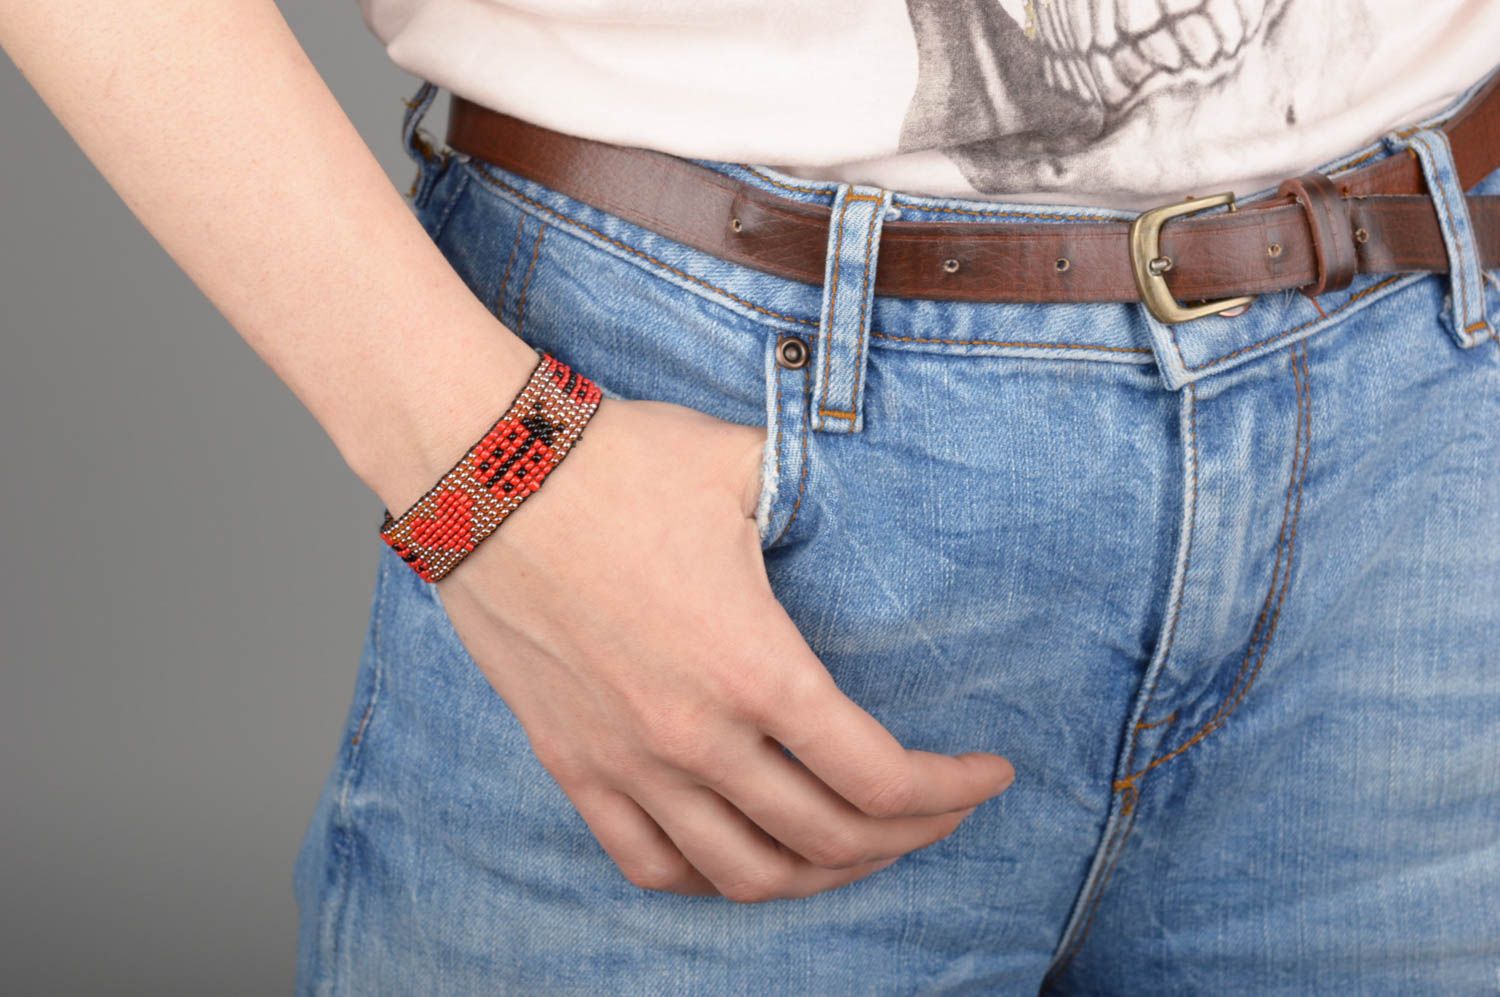 Strand ladybug red heart beaded bracelet for teen girl photo 5